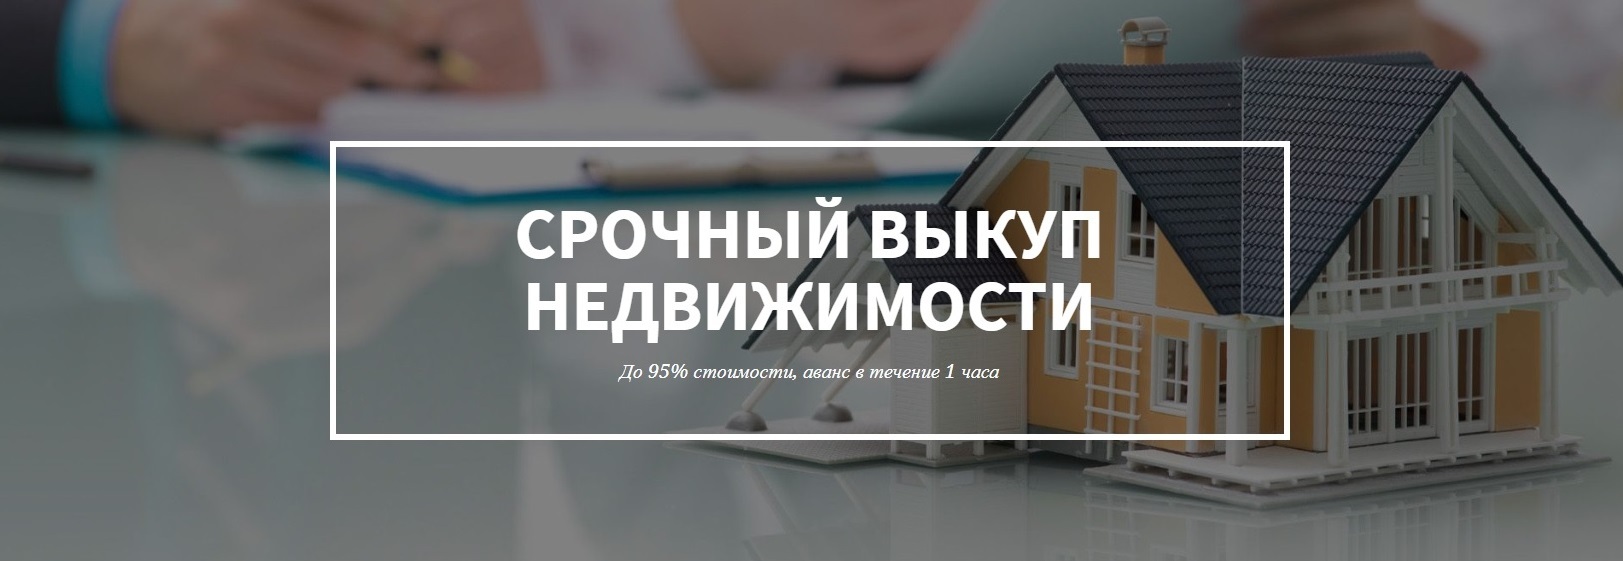 дизайн картинка выкупа недвижимости в Ярославле